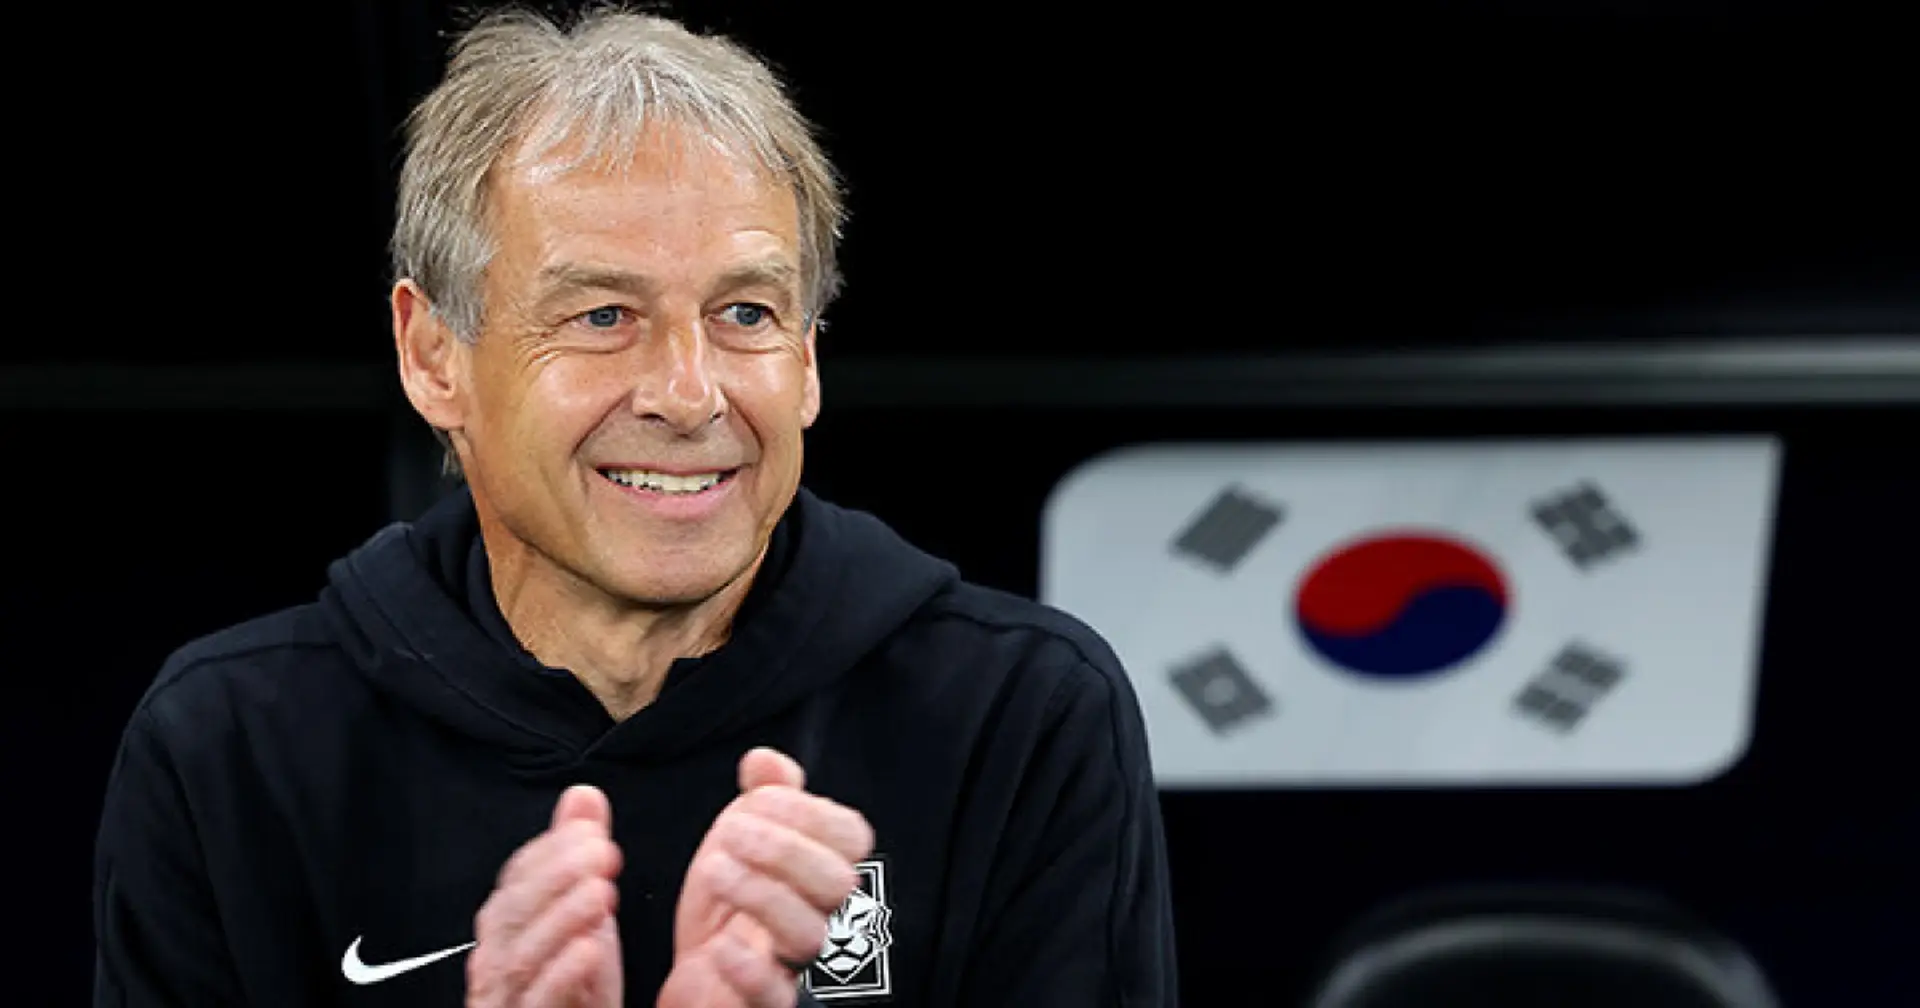 Klinsmann wird in Korea verflucht - für das Nationalteam ohne Taktik, seine Arbeit von den USA aus und ein unangemessenes Lächeln 